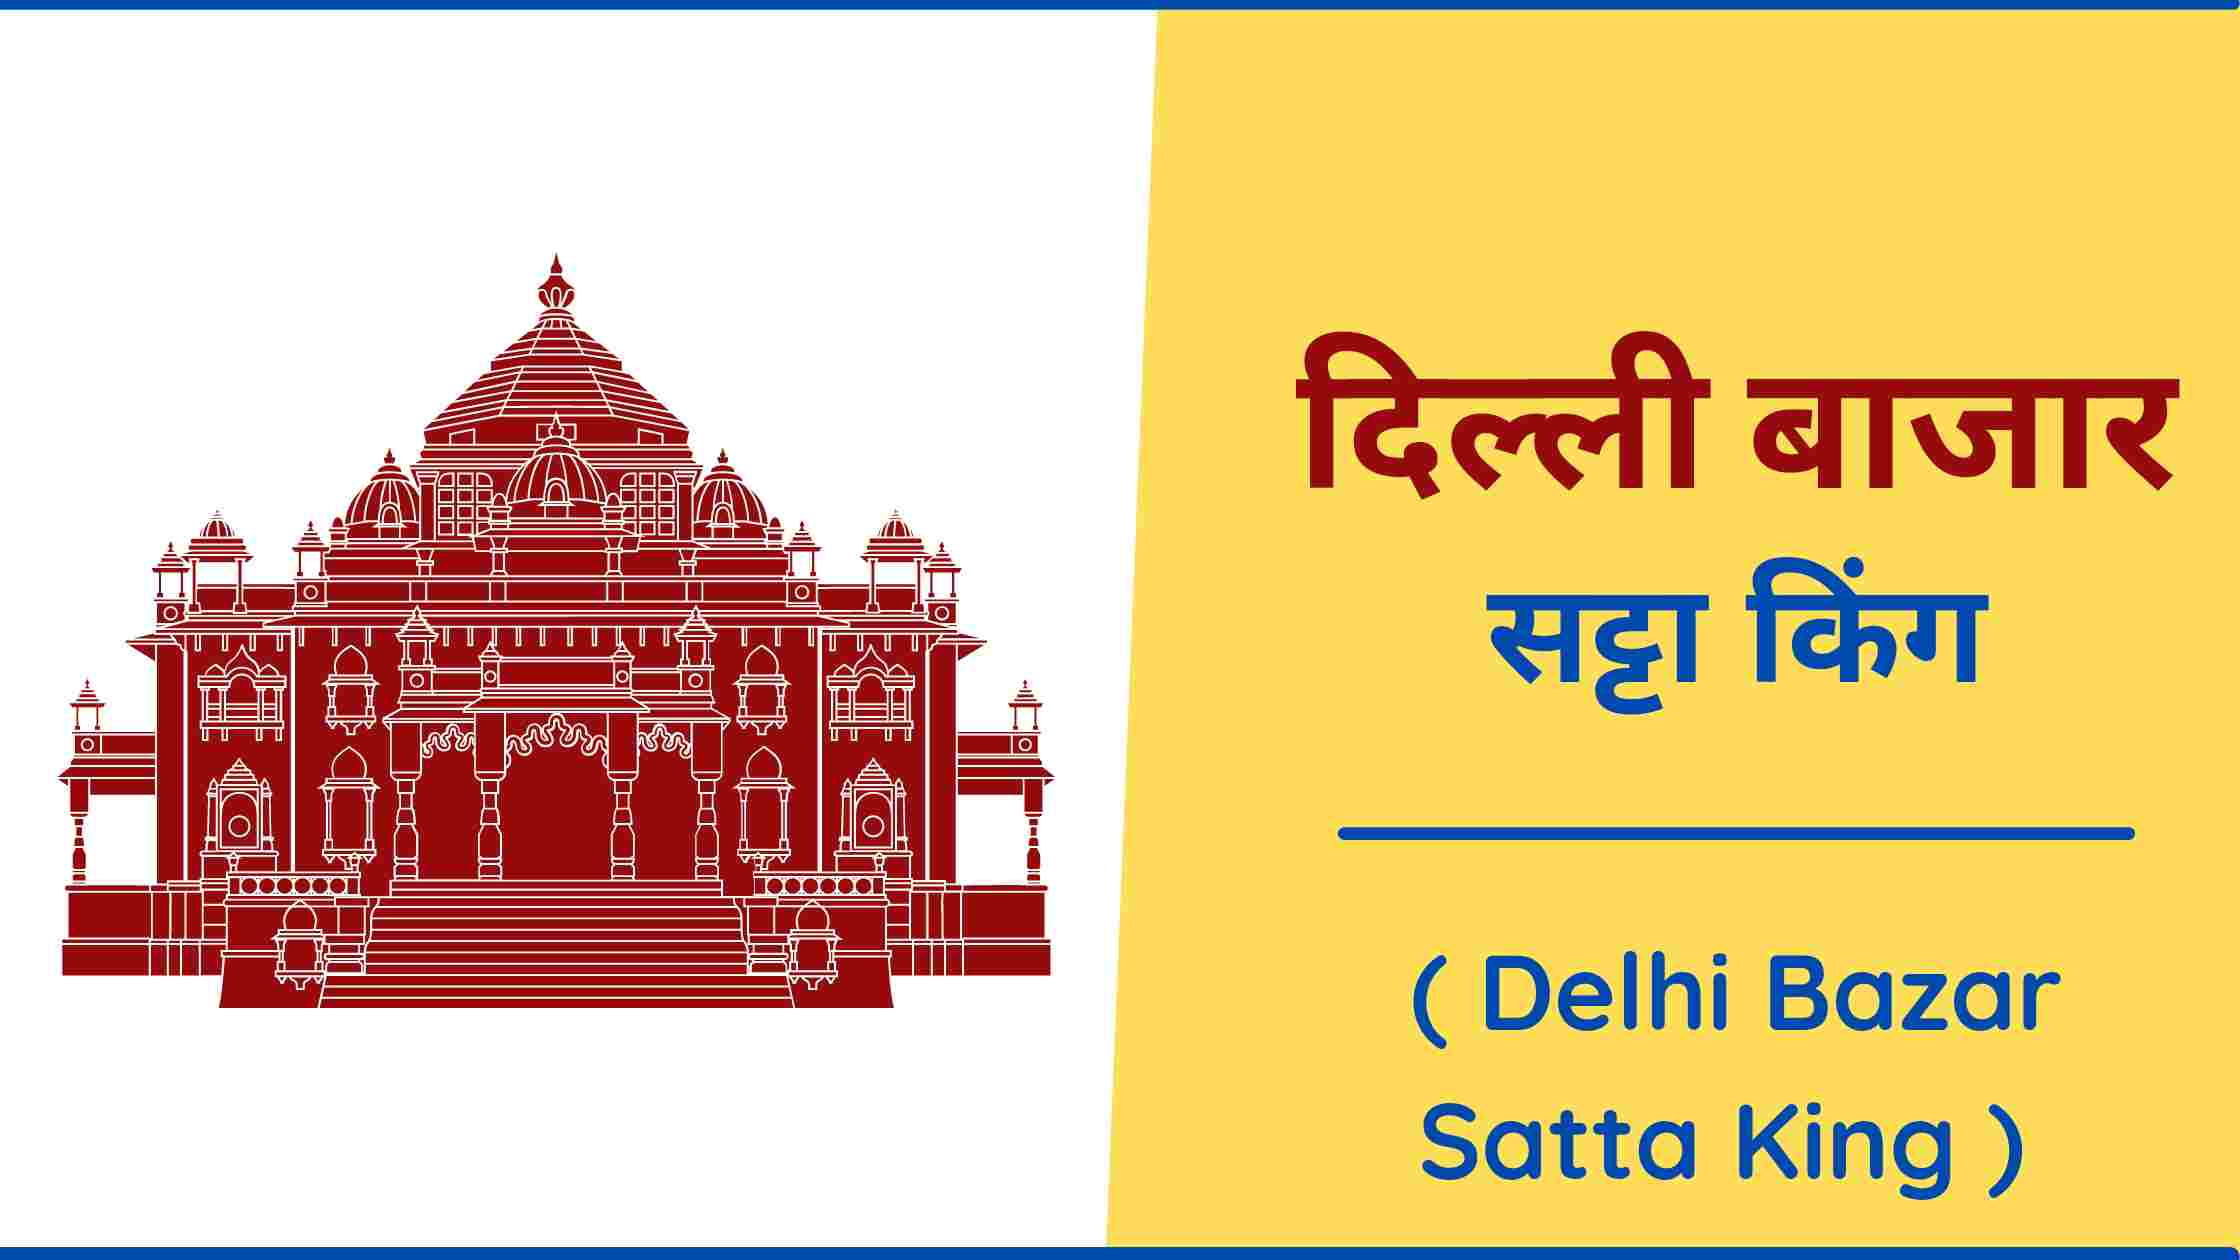 delhi-bazar-satta-king